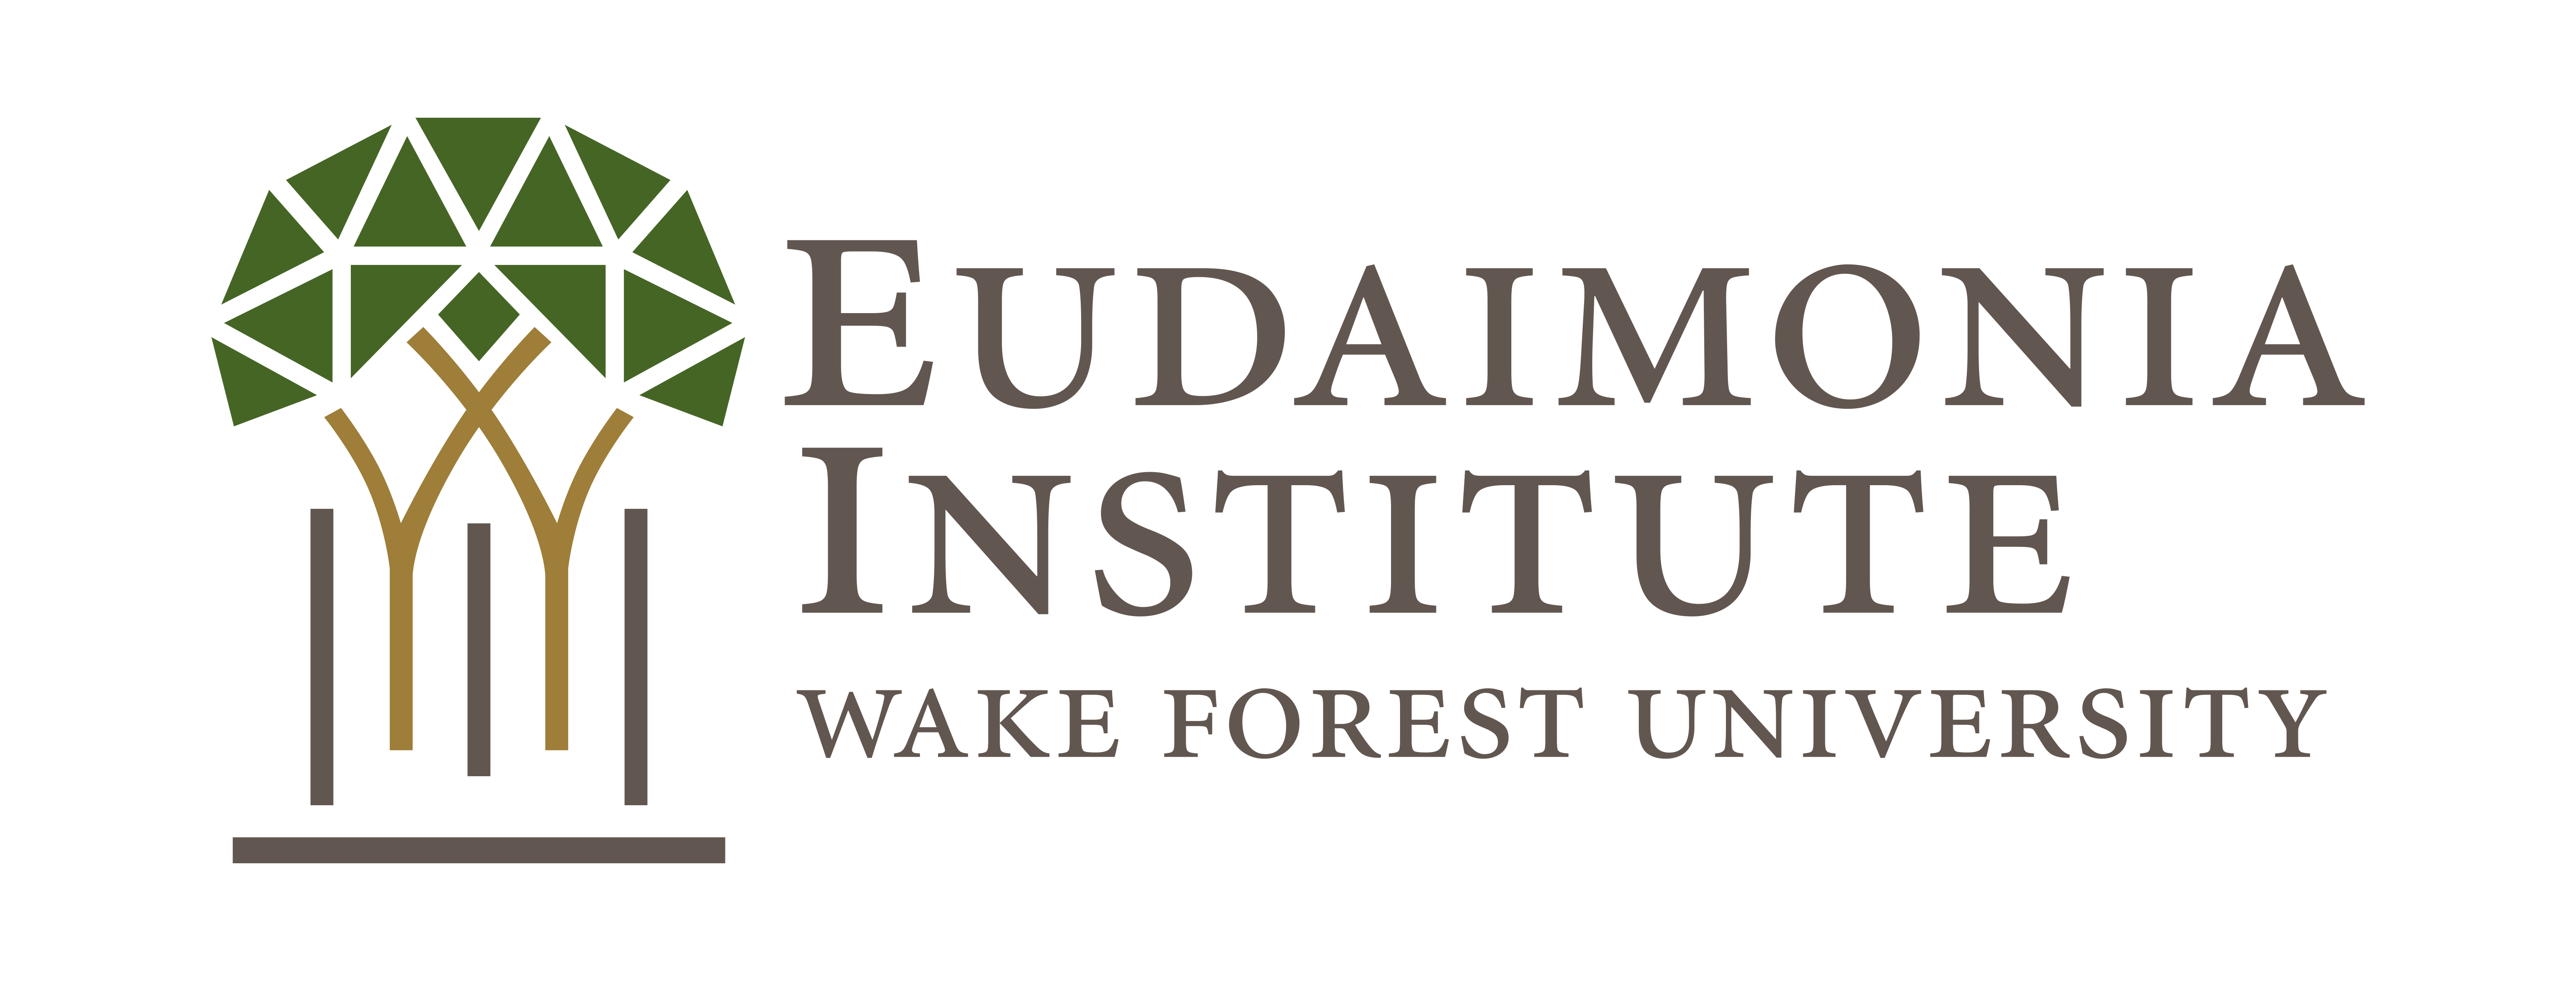 Concerns arise over funding of Eudaimonia Institute